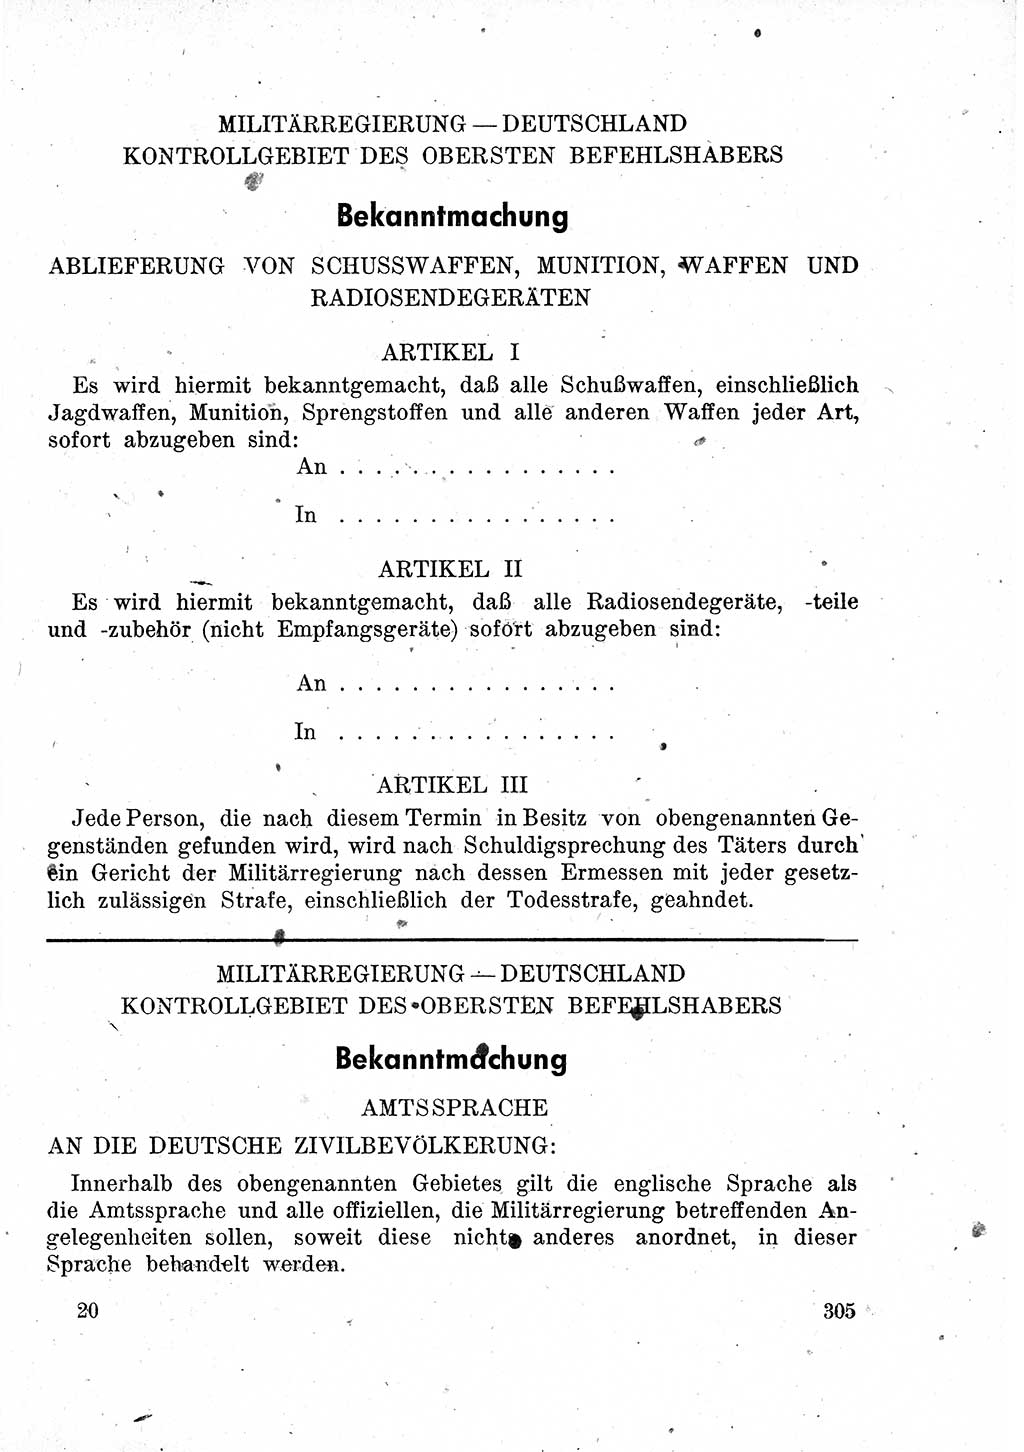 Das Recht der Besatzungsmacht (Deutschland), Proklamationen, Deklerationen, Verordnungen, Gesetze und Bekanntmachungen 1947, Seite 305 (R. Bes. Dtl. 1947, S. 305)